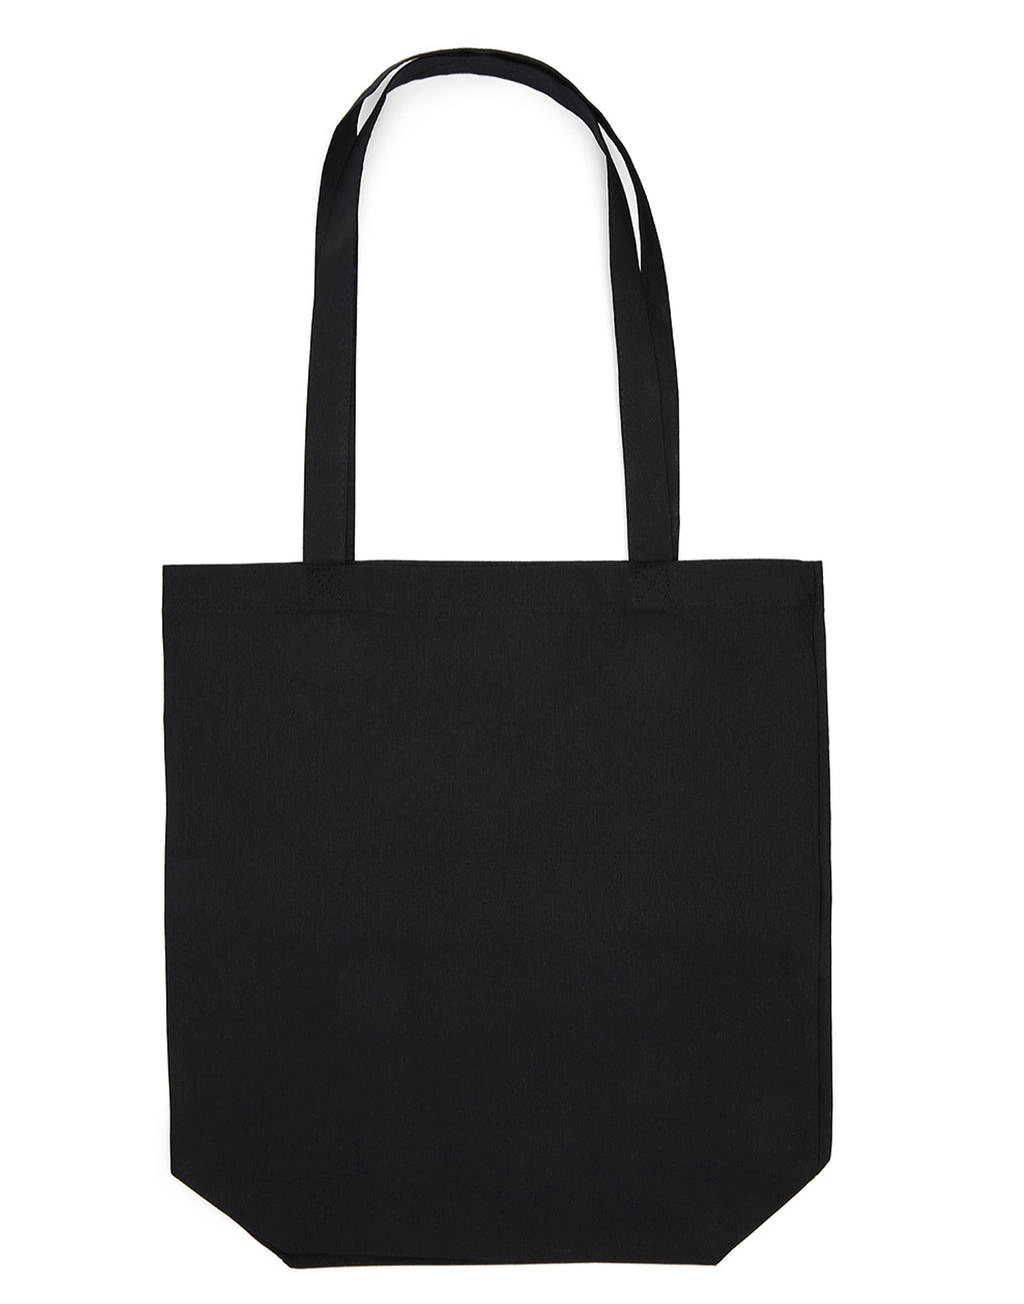 Cotton Bag LH with Gusset zum Besticken und Bedrucken in der Farbe Black mit Ihren Logo, Schriftzug oder Motiv.